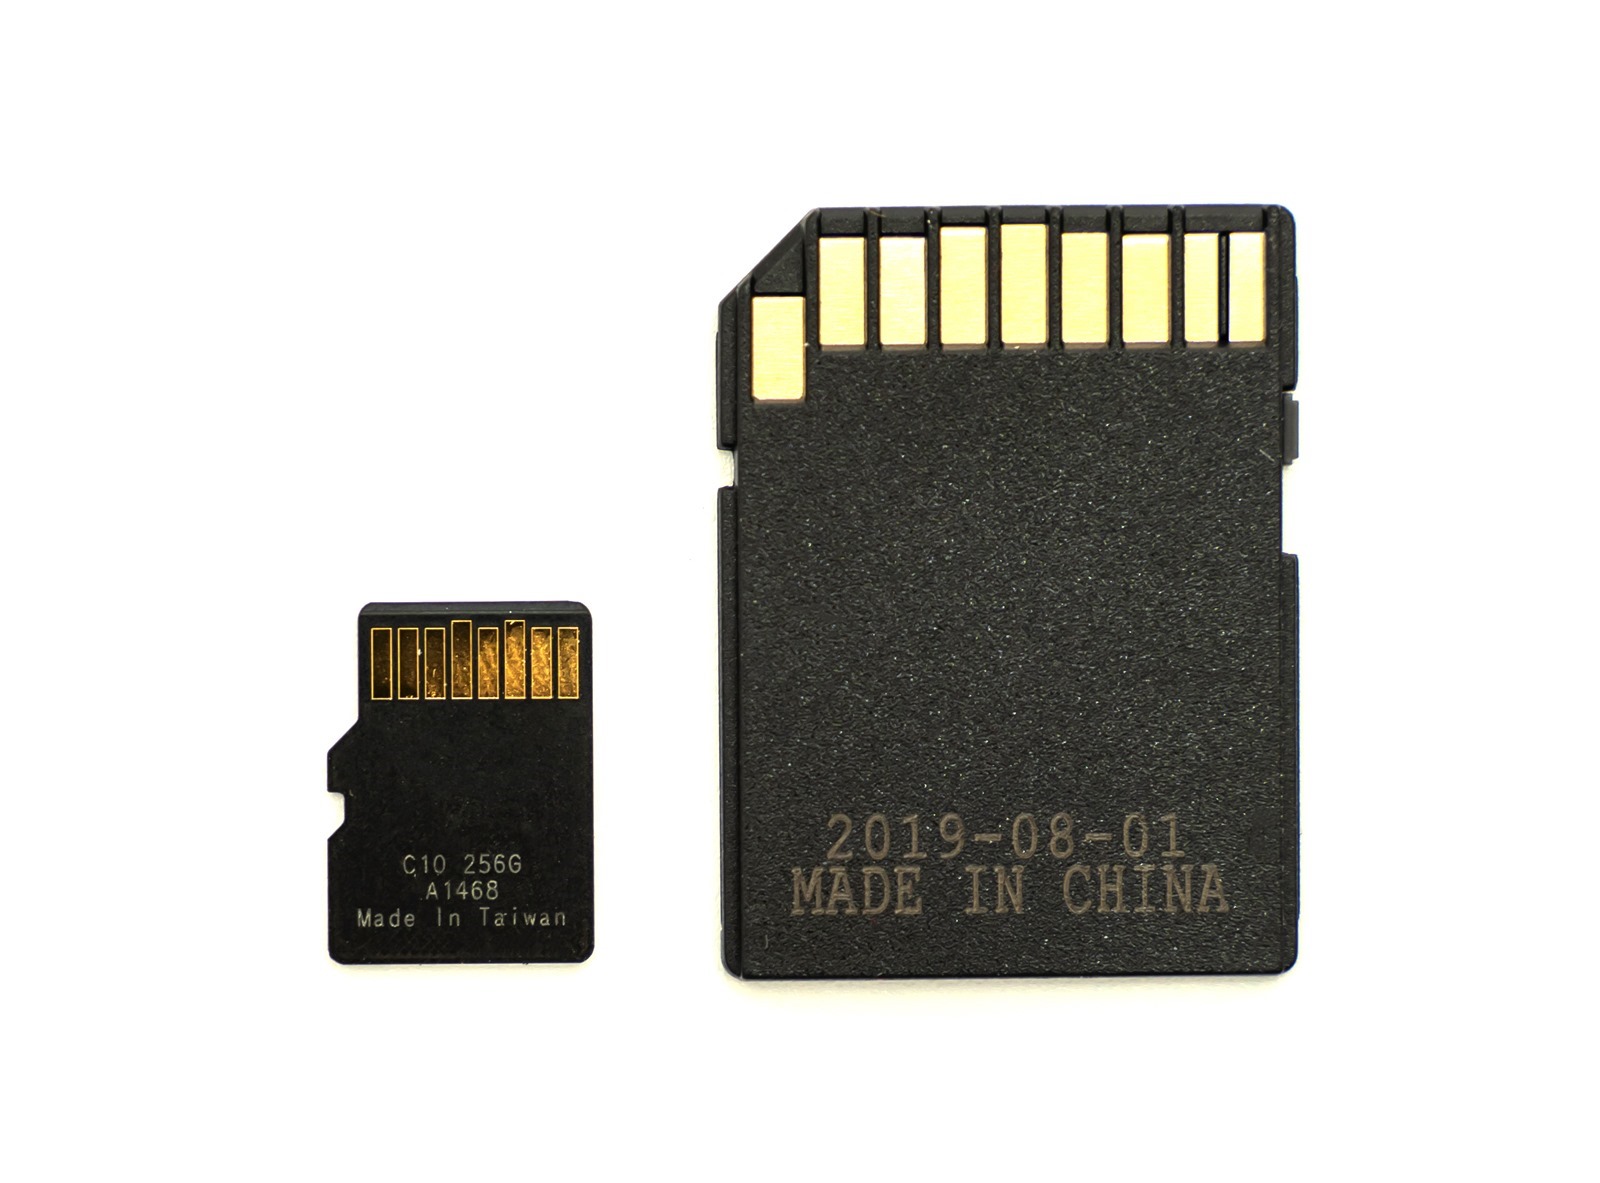 這張記憶卡好嗎？KLEVV 科賦 MicroSDXC 256GB 記憶卡 (U3/A2/V30) 手機電腦實測 @3C 達人廖阿輝